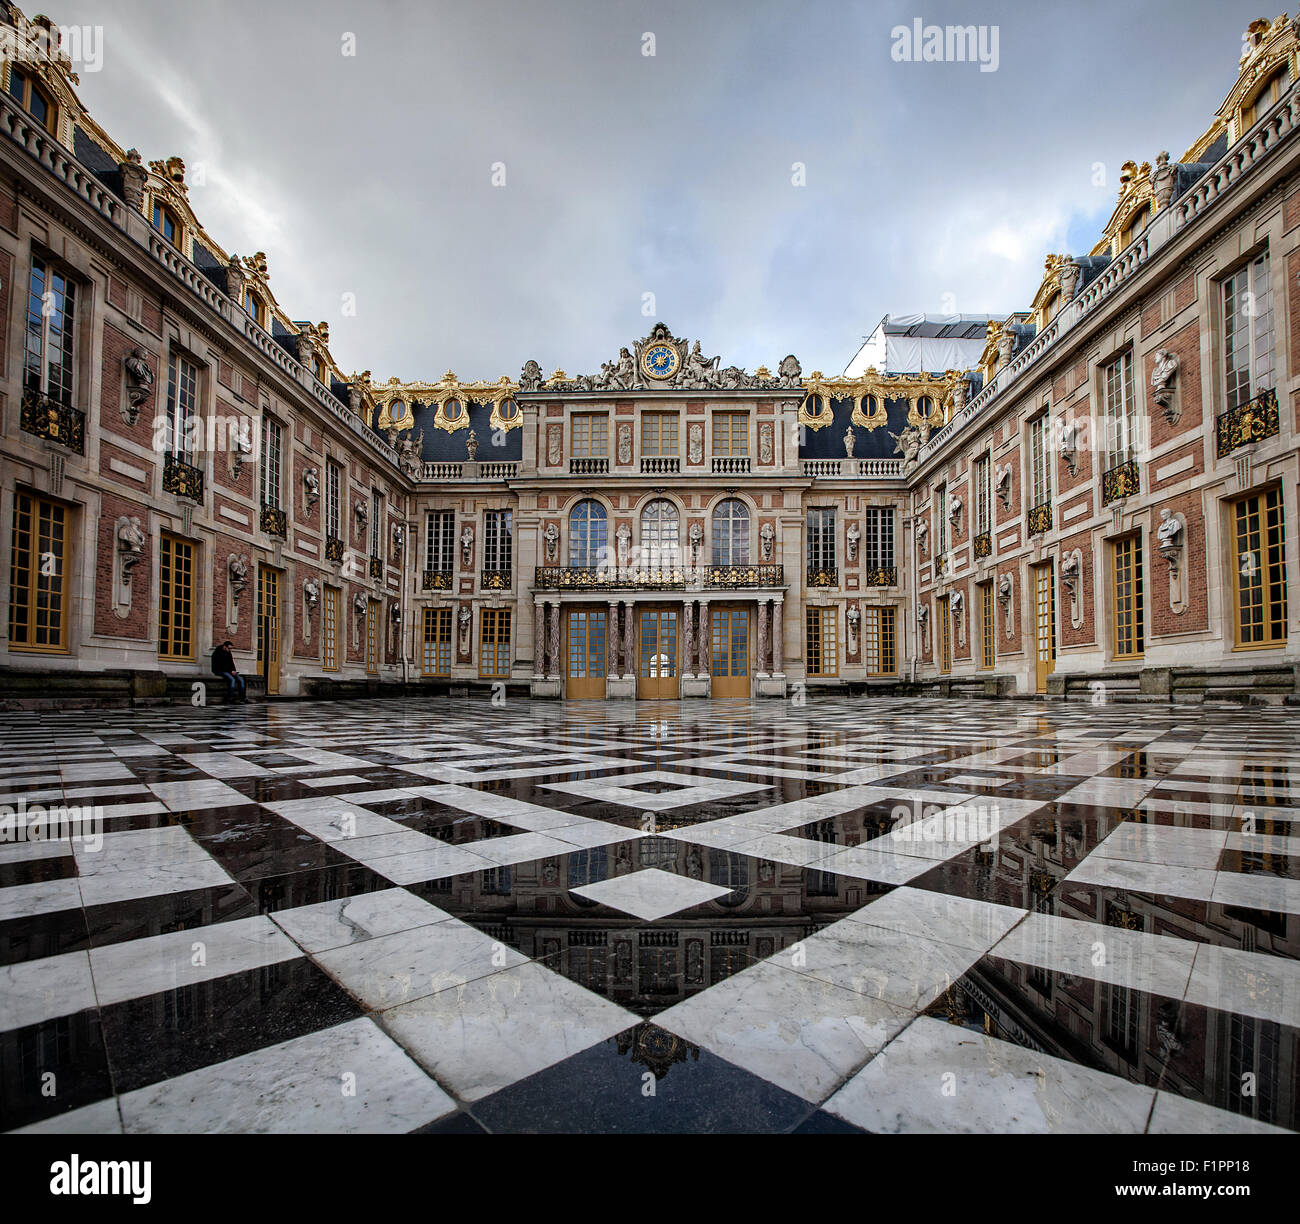 chateau de versailles, marble court, france Stock Photo